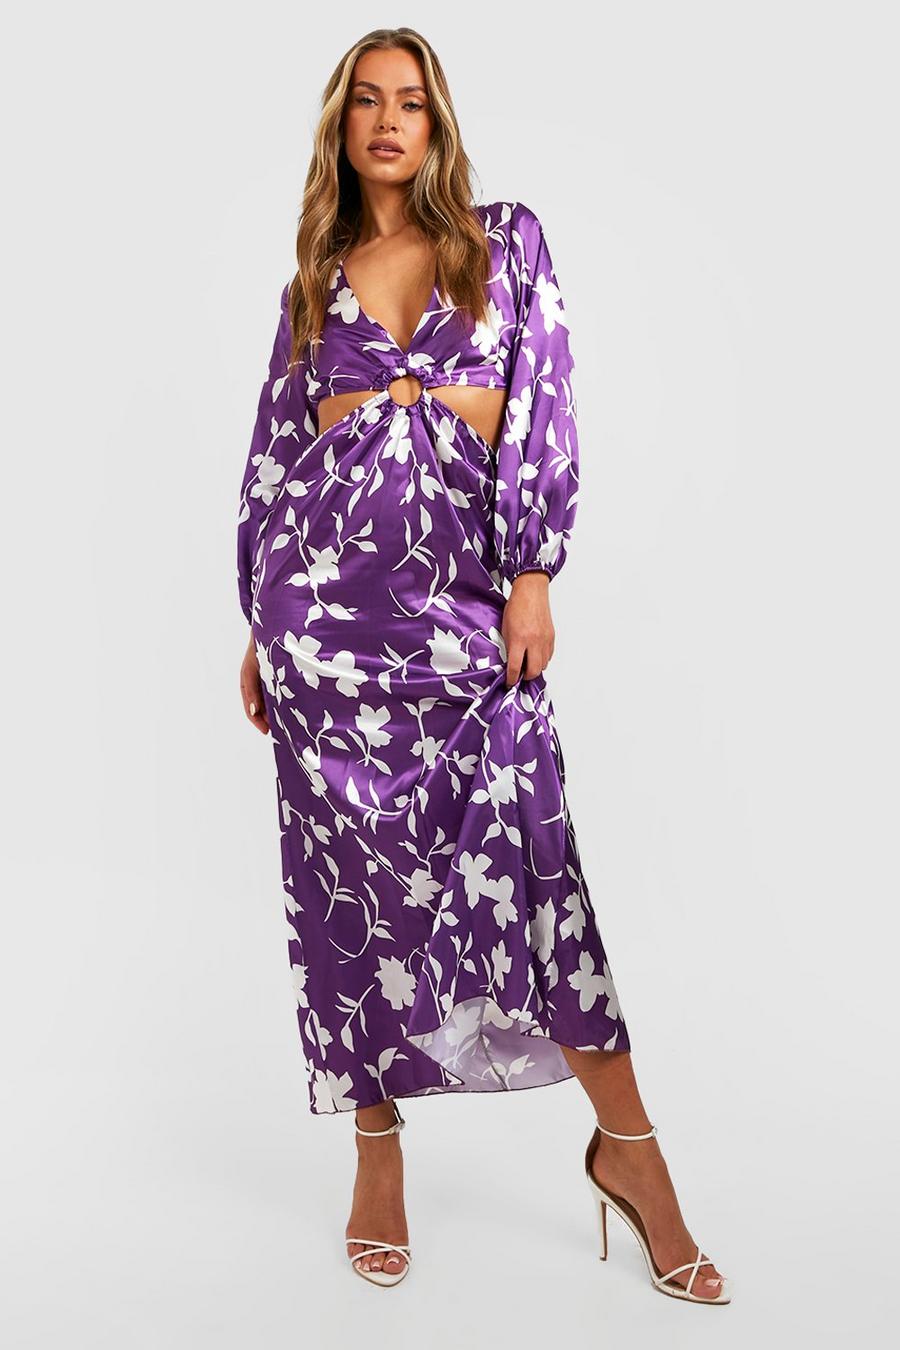 Robe longue fleurie à découpes, Jewel purple violet